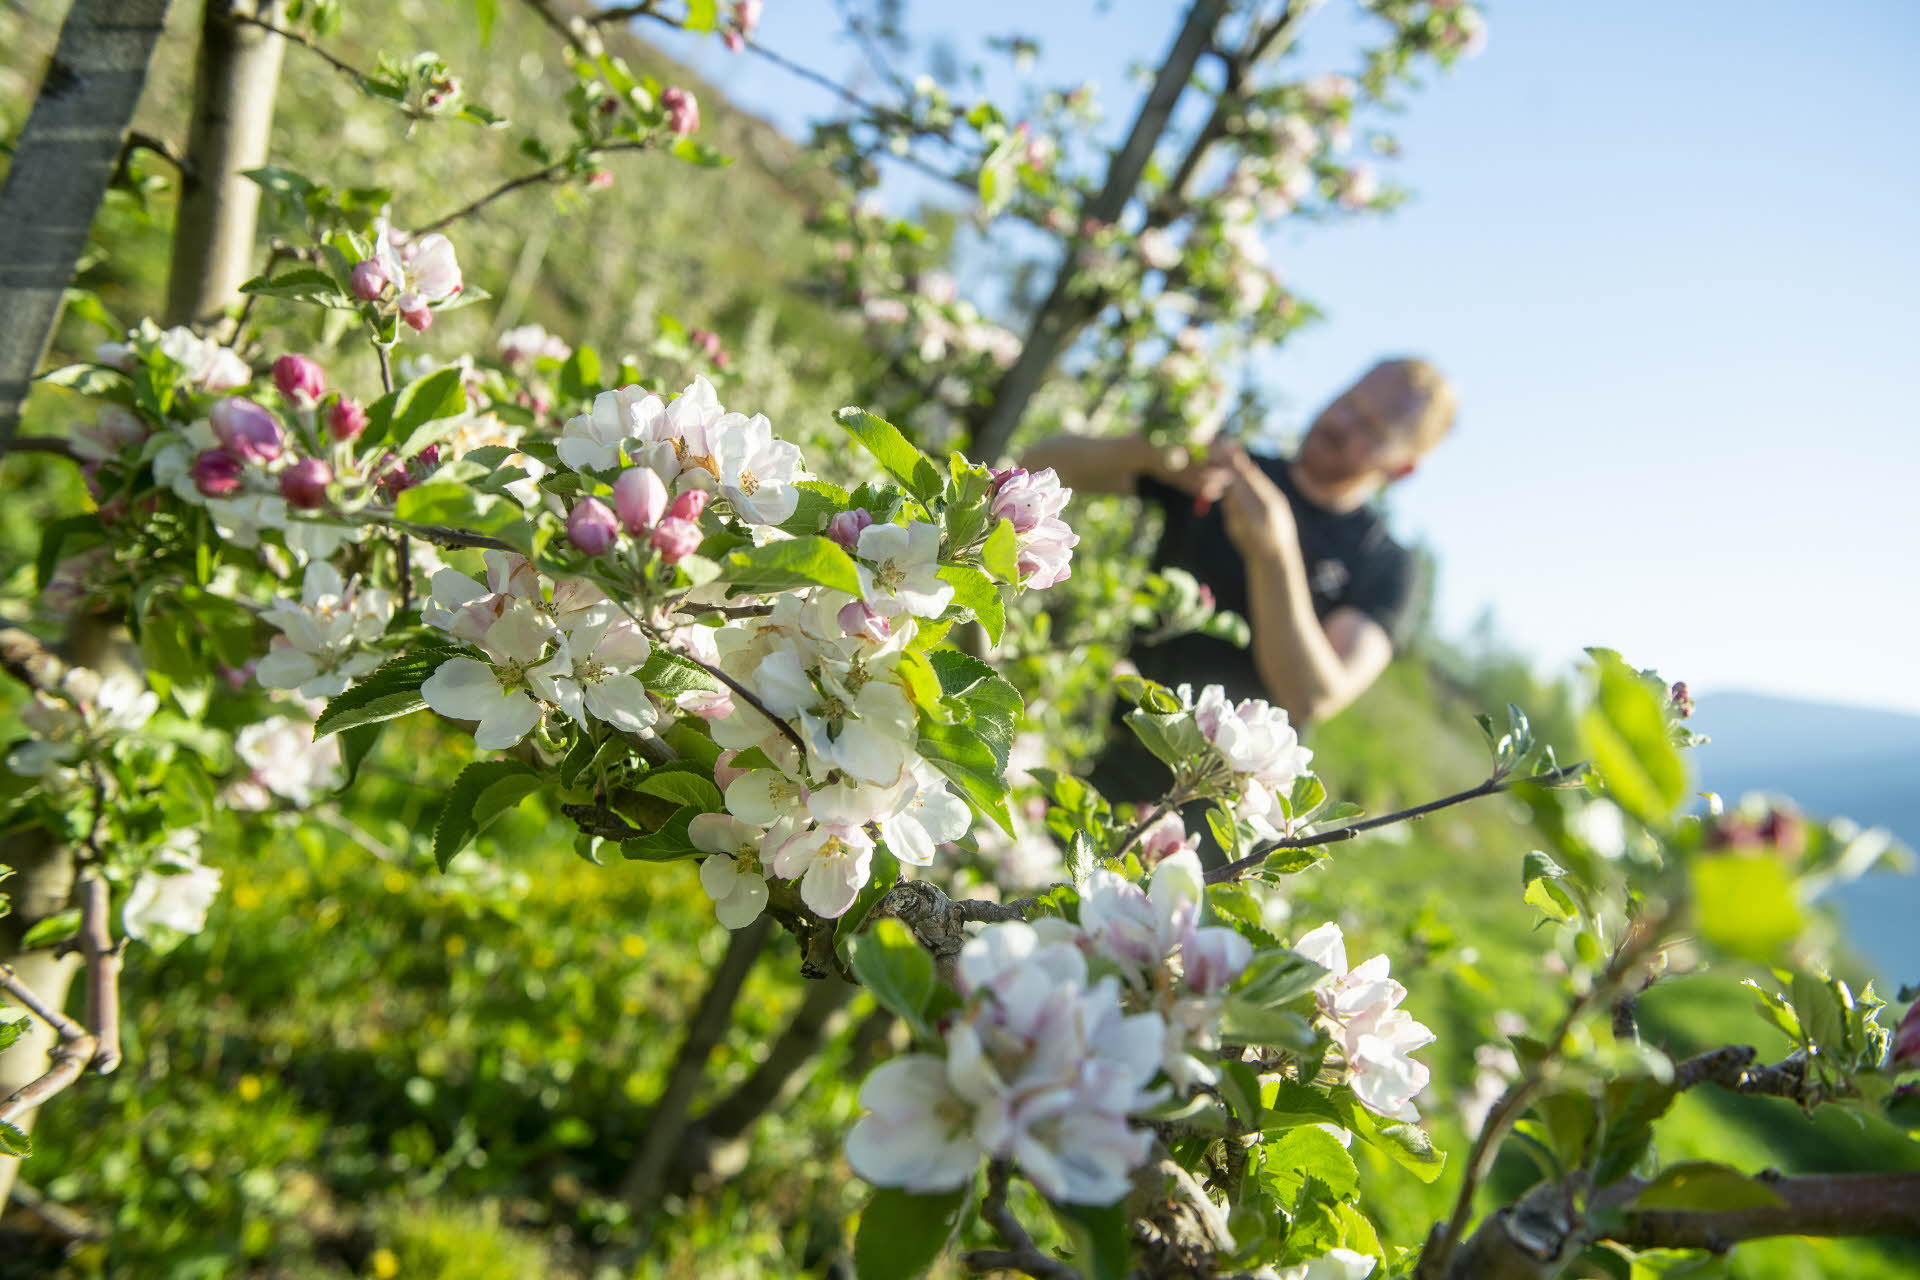 ハルダンゲルフィヨルド(Hardangerfjord)を背にりんごの木を選定するりんご農家